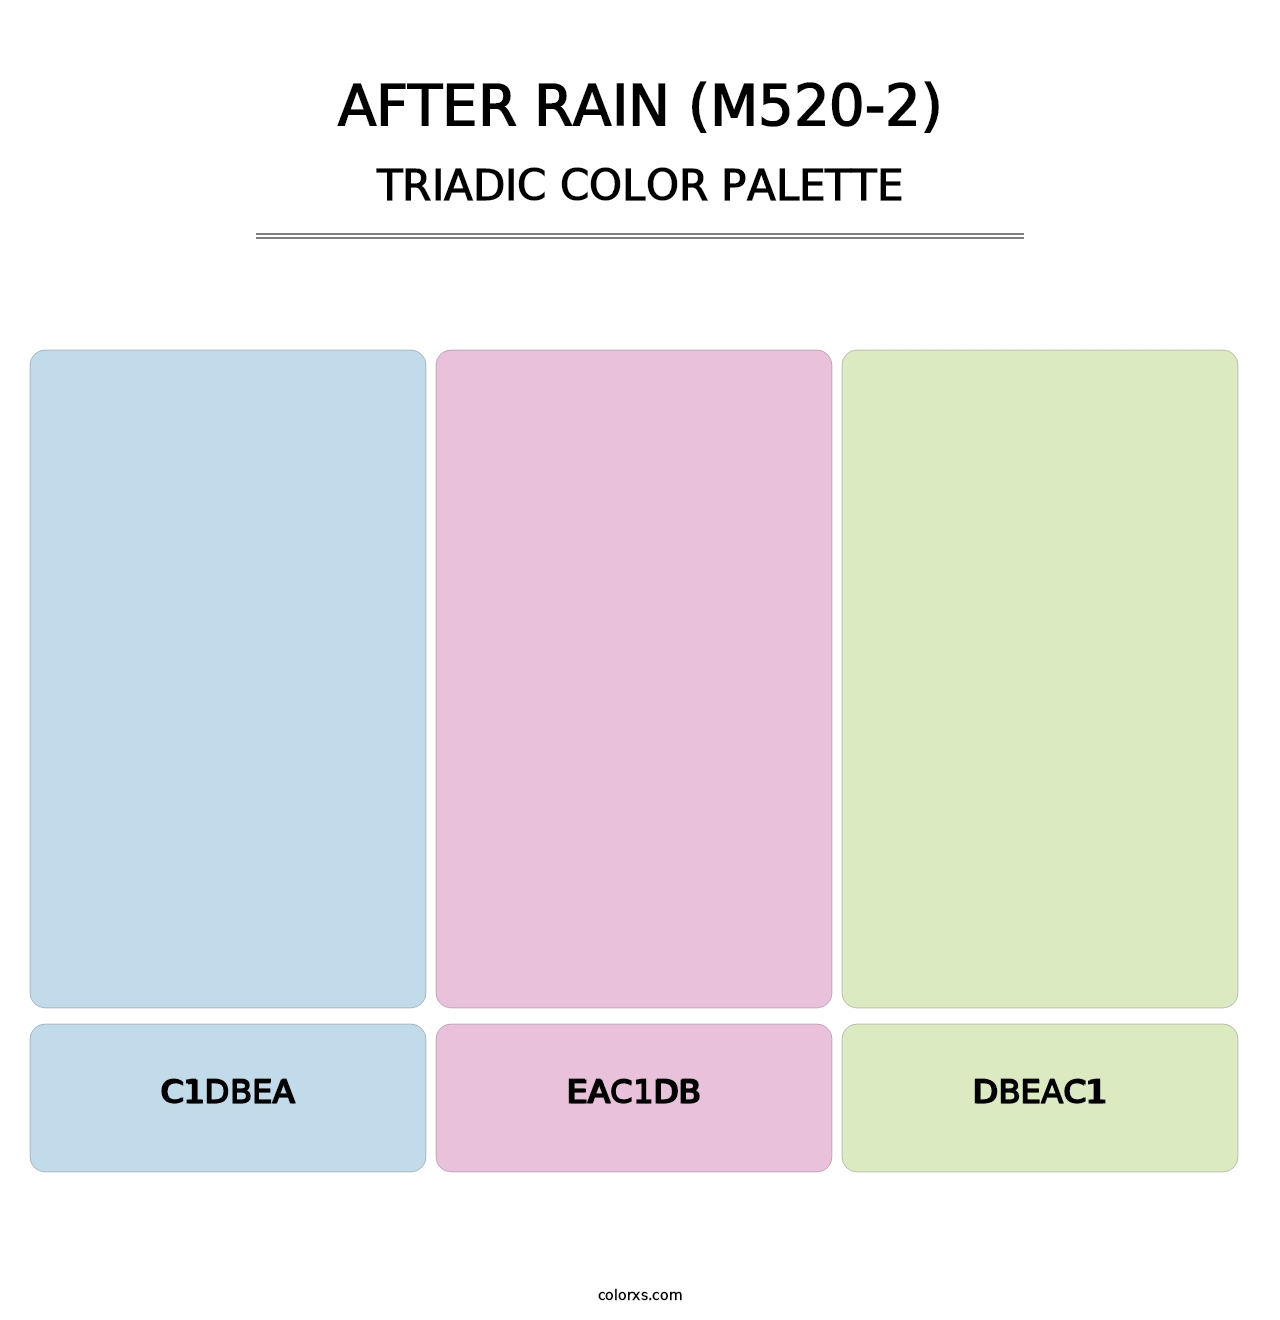 After Rain (M520-2) - Triadic Color Palette